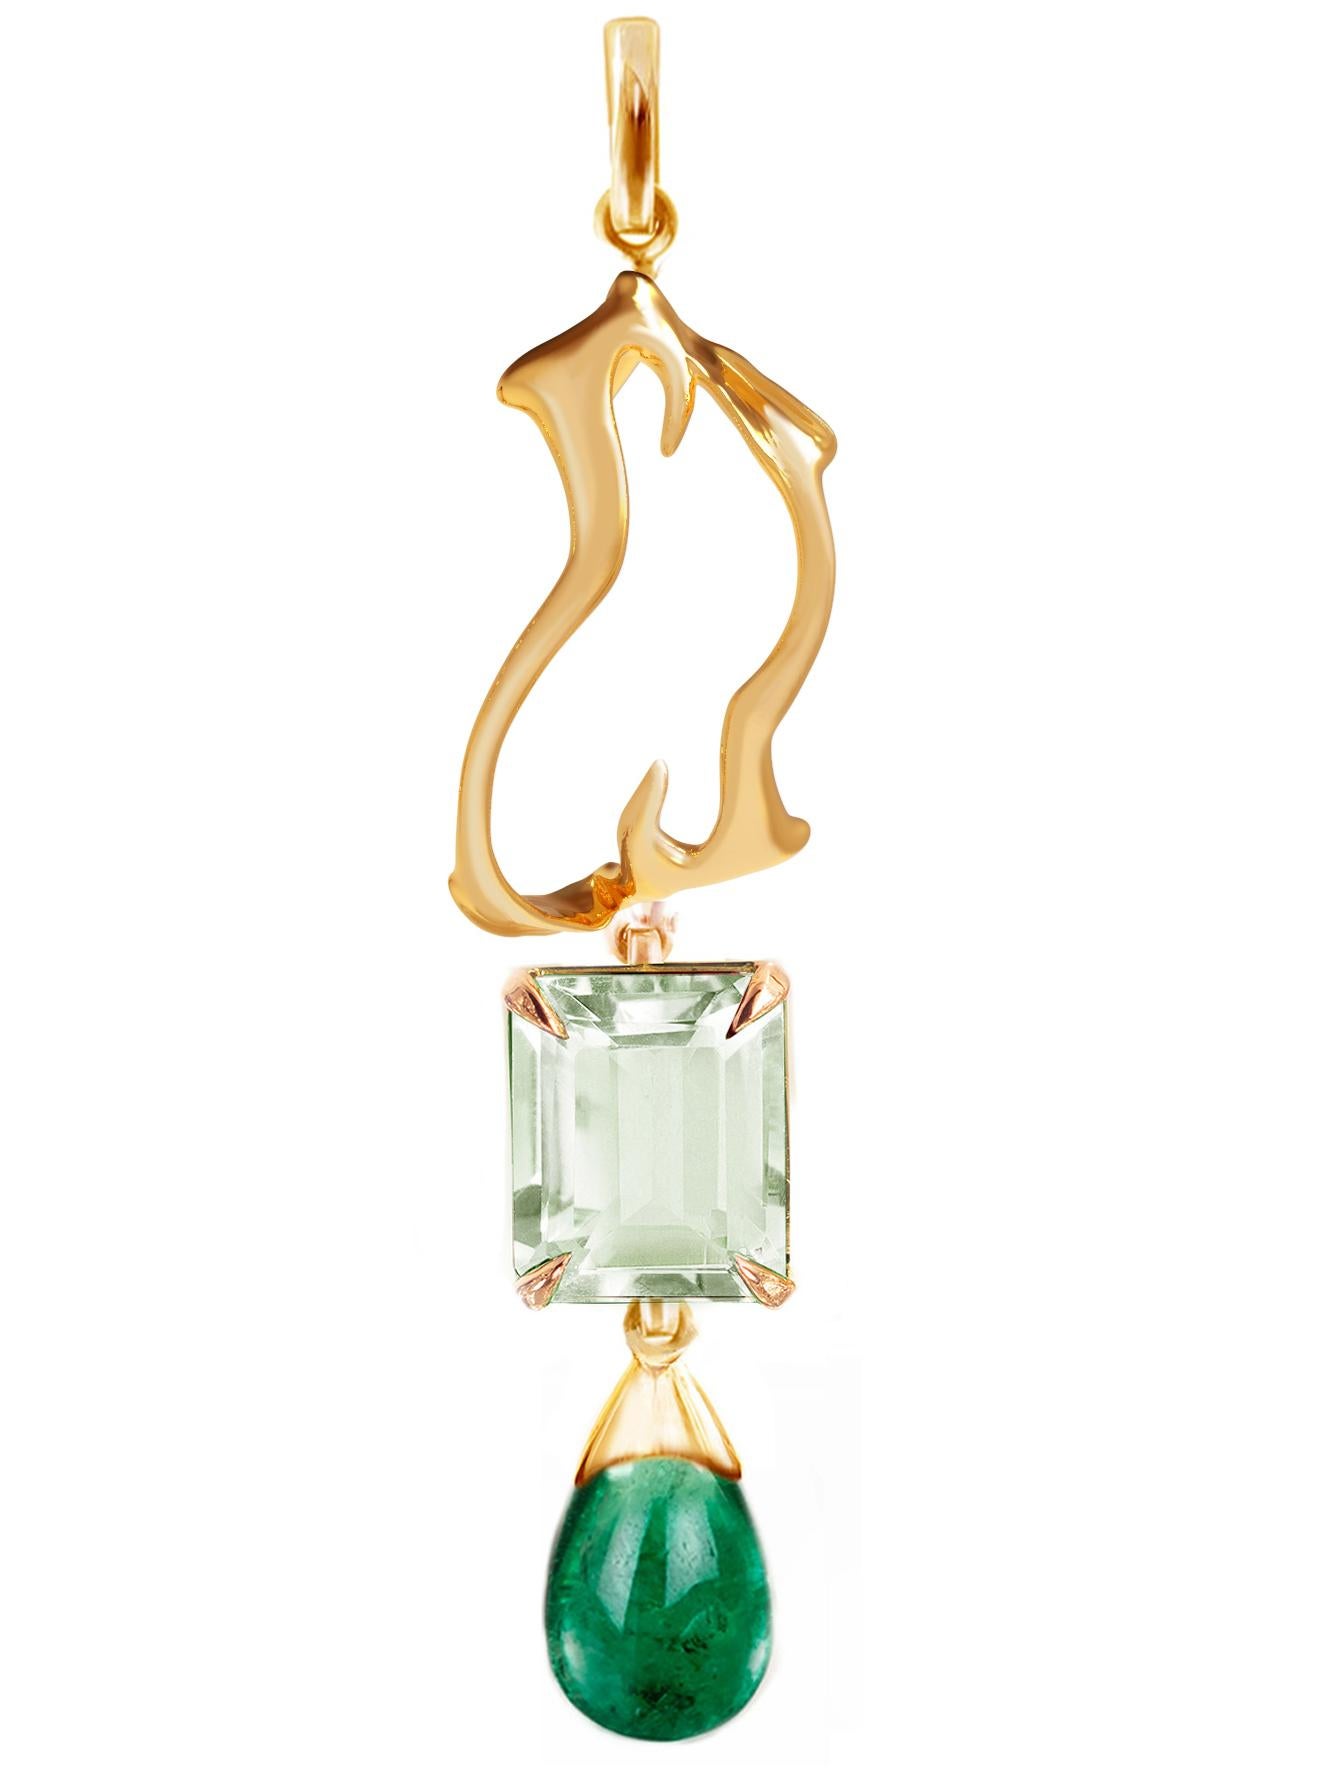 Eighteen Karat Yellow Gold Tibetan Drop Pendant Necklace with Emerald  In New Condition For Sale In Berlin, DE